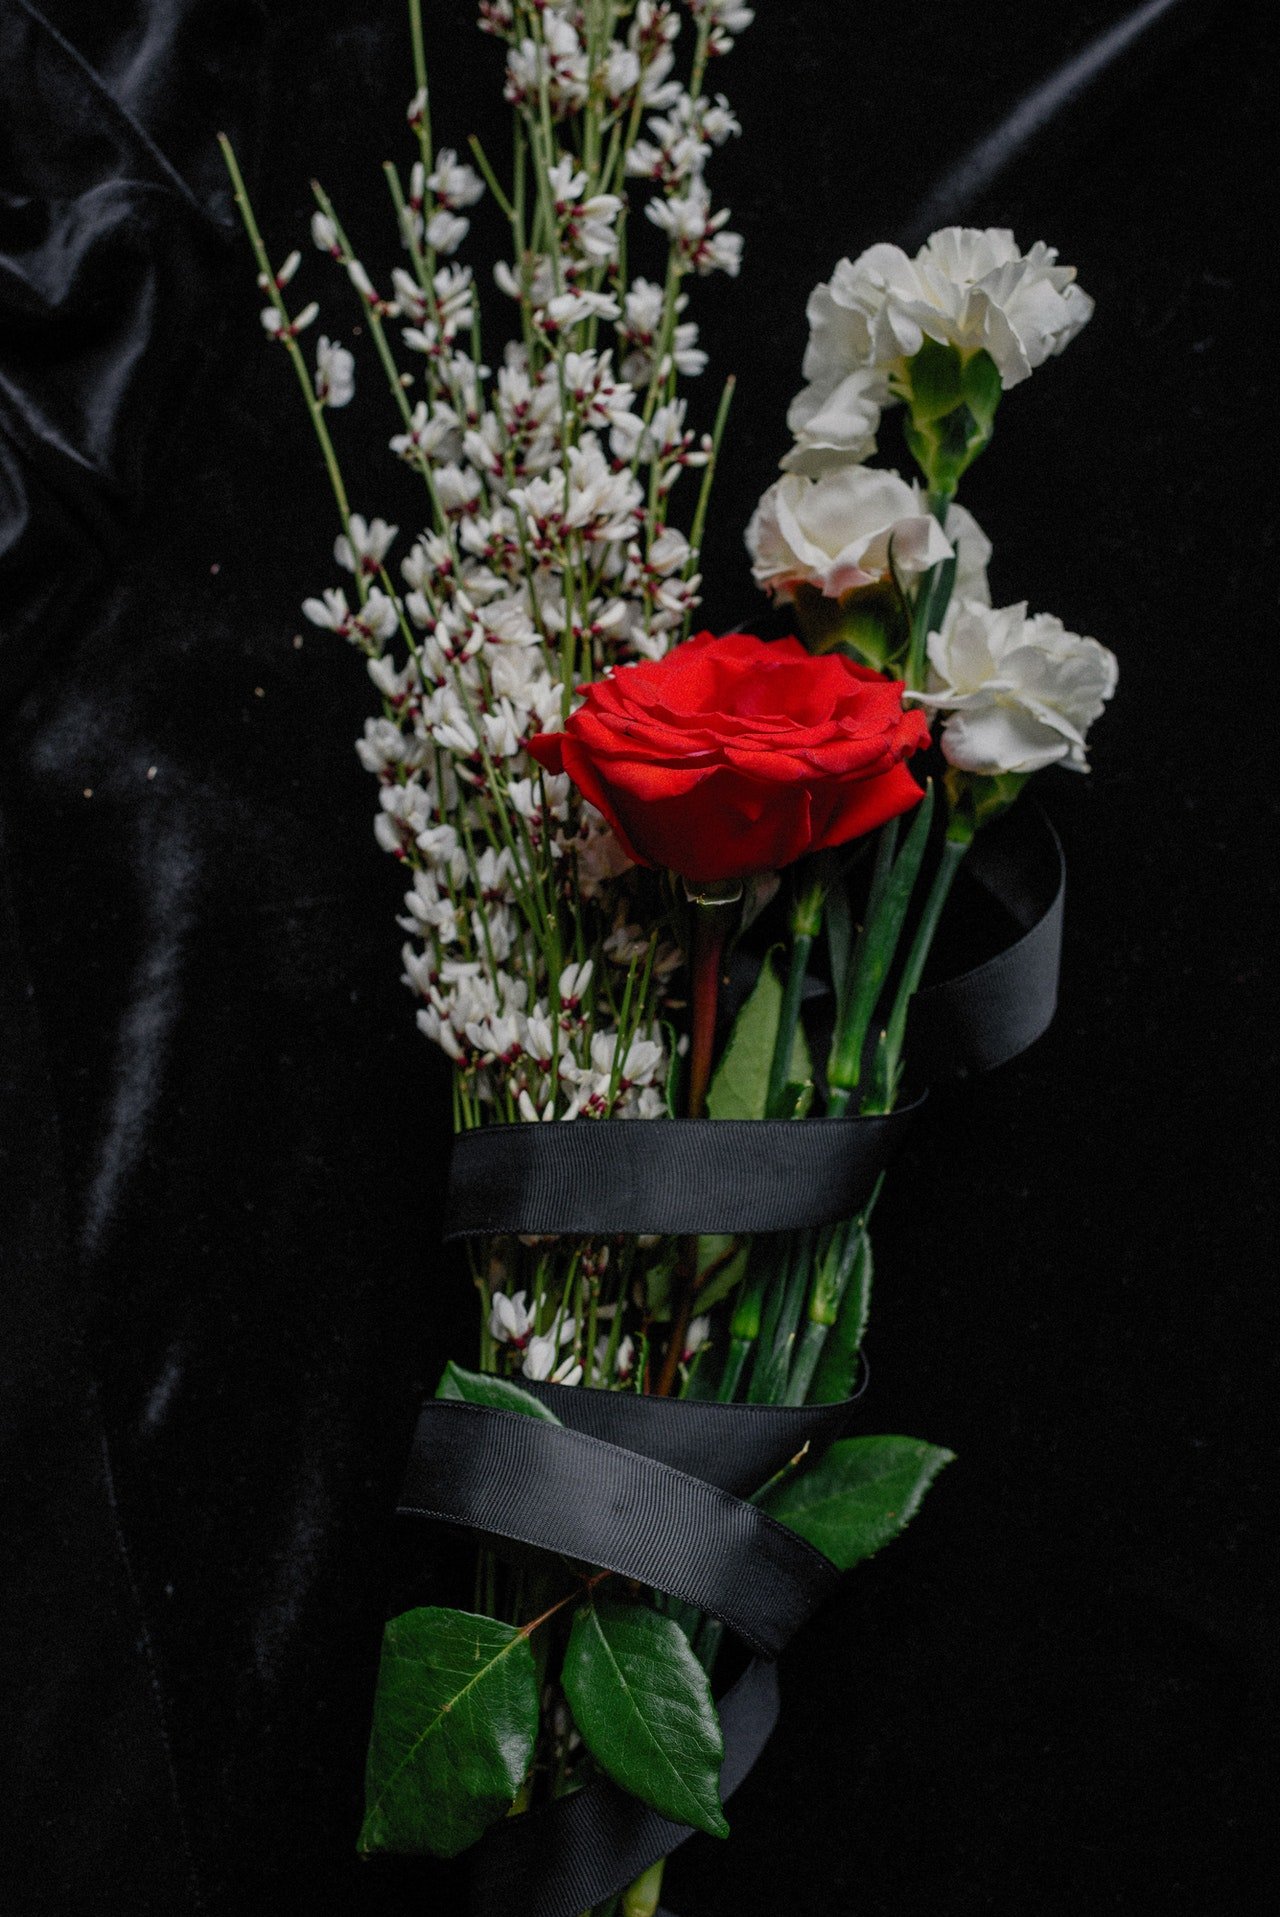 In schwarzes Papier eingewickelter Blumenstrauß | Quelle: Pexels